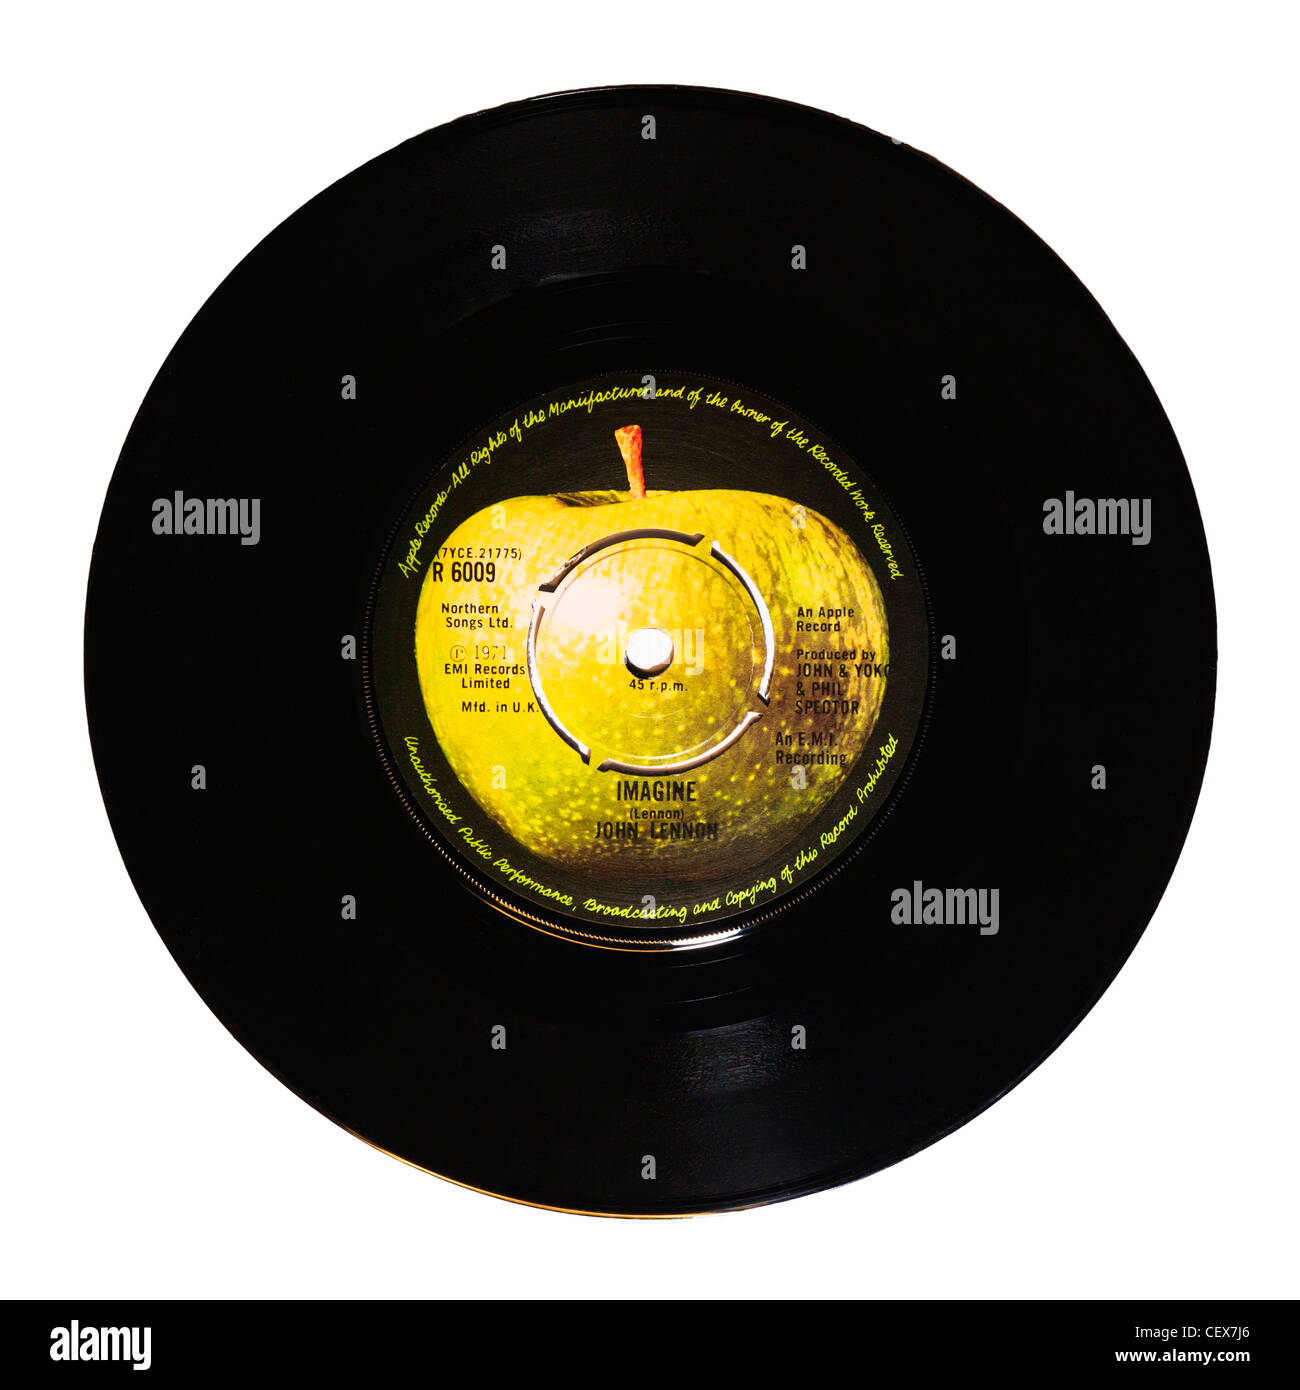 Un disque vinyle, Imagine de John Lennon sur un fond blanc Banque D'Images